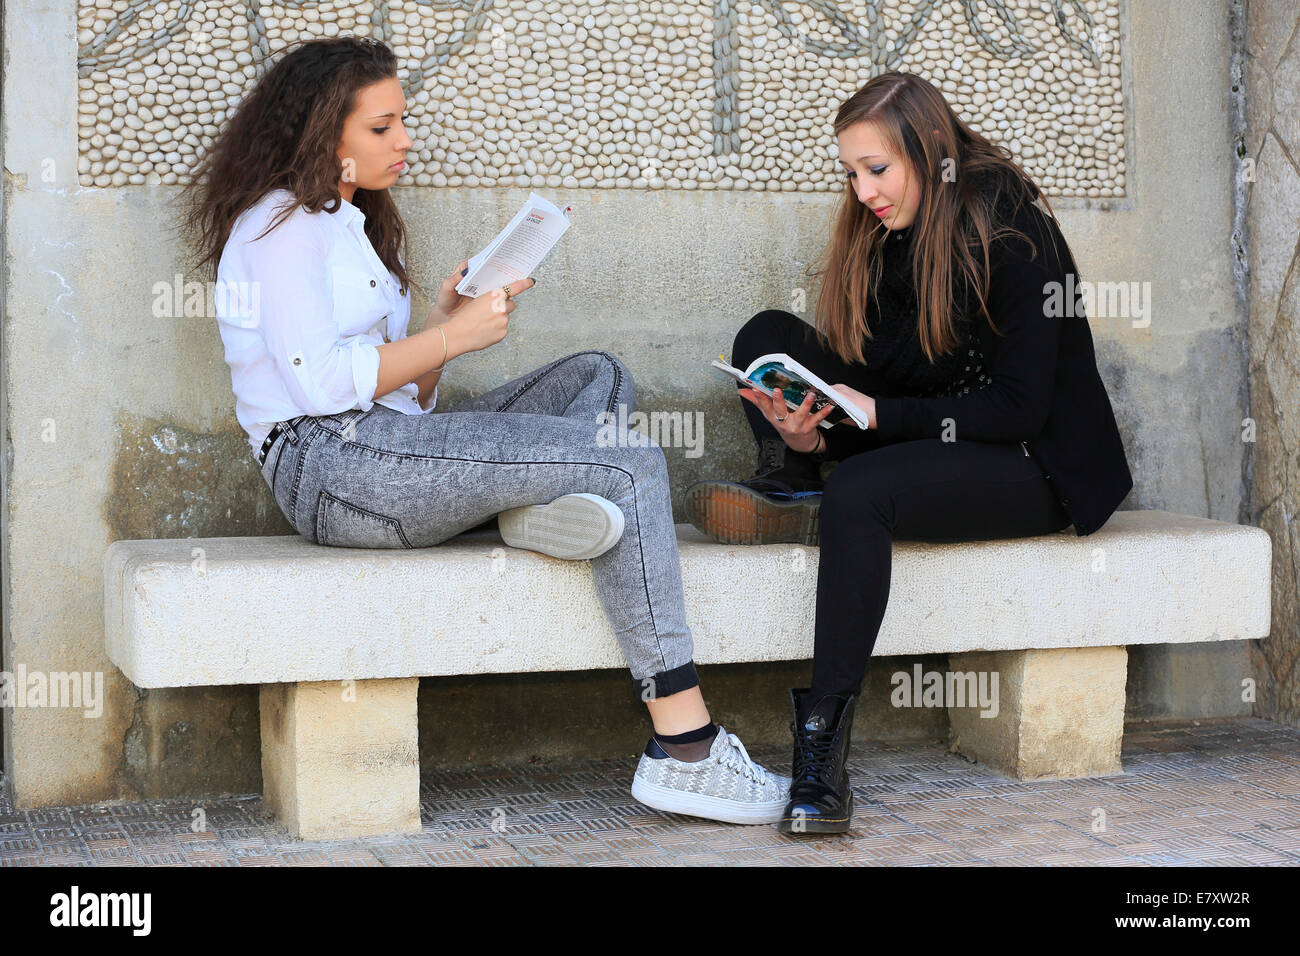 Deux copines, adolescents, assis sur un banc en pierre, la lecture de livres, Menton, Alpes-Maritimes, Provence Alpes, France Banque D'Images